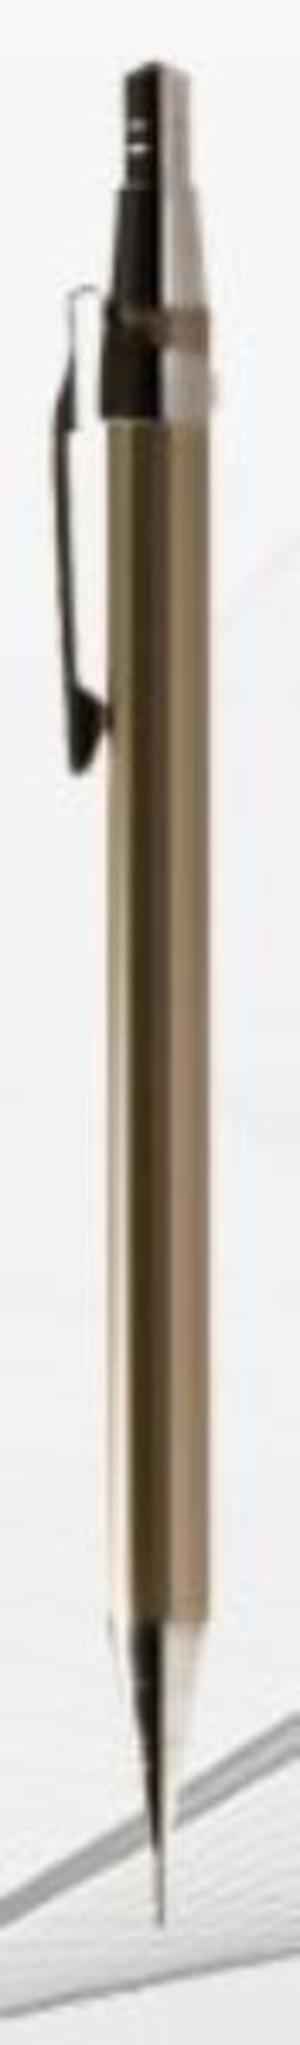 Ołówek aut.0,7mm c.brąz blister TETIS, cena za 1szt.